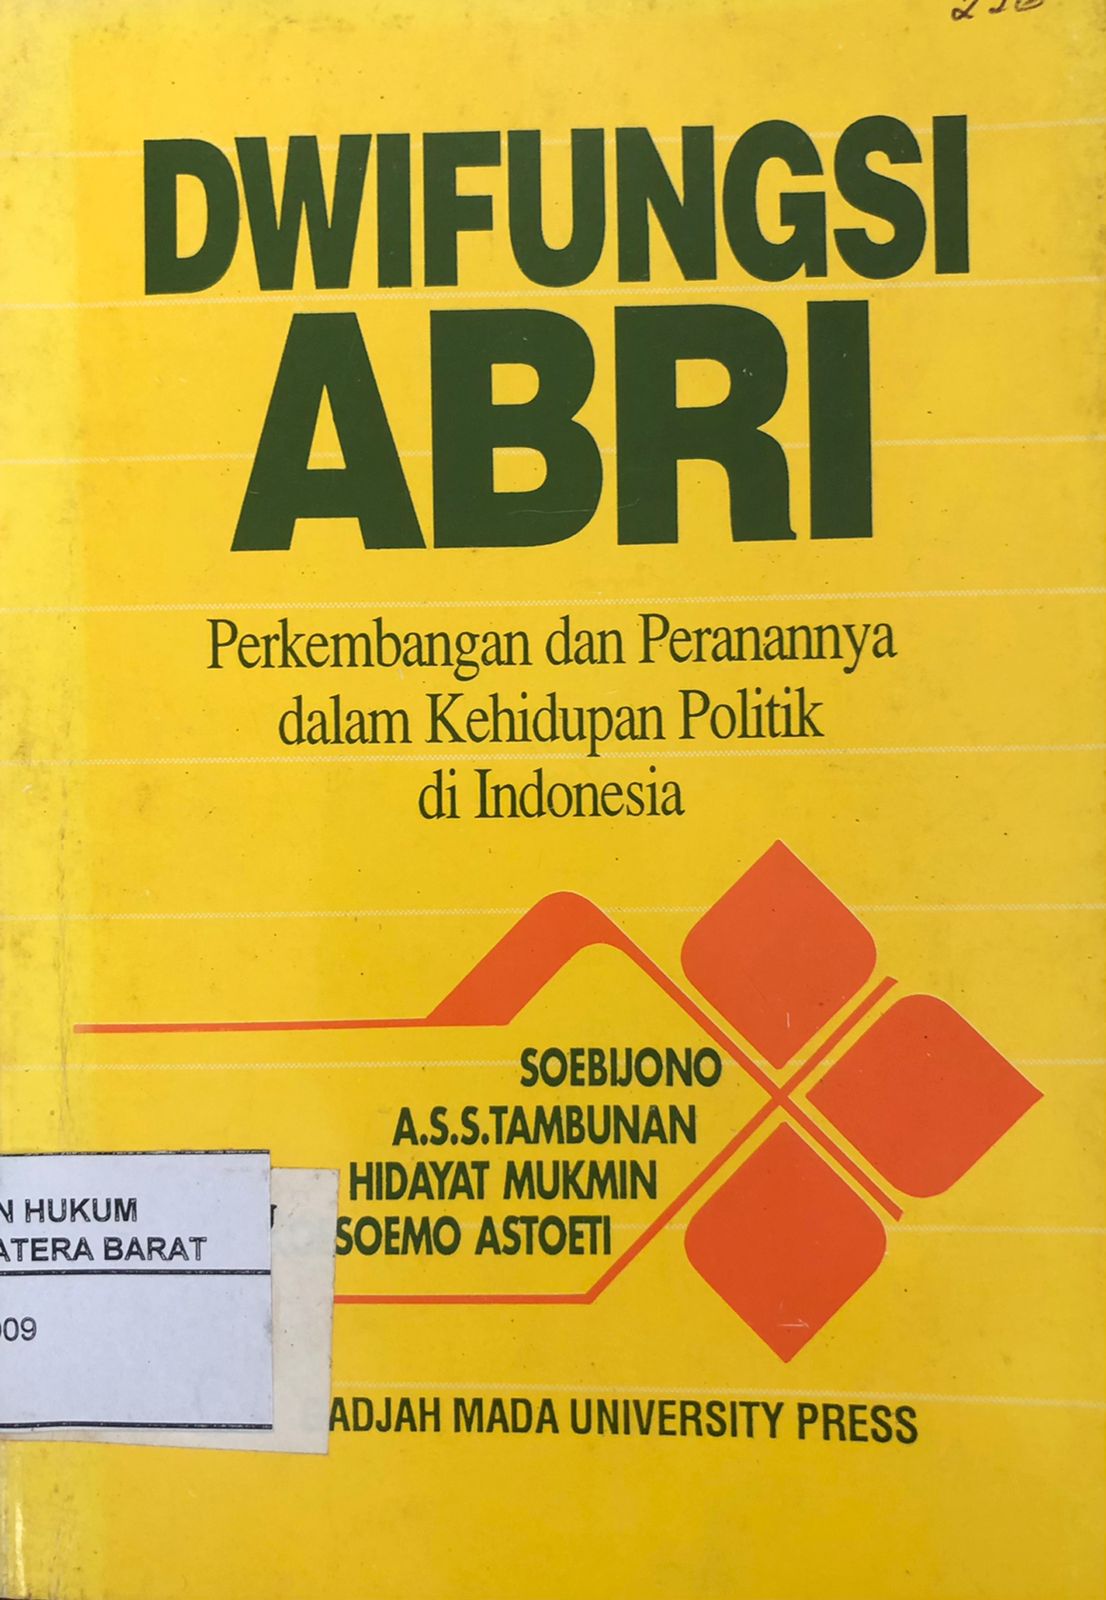 Dwifungsi ABRI: Perkembangan dan Peranannya Dalam Kehidupan Politik di Indonesia